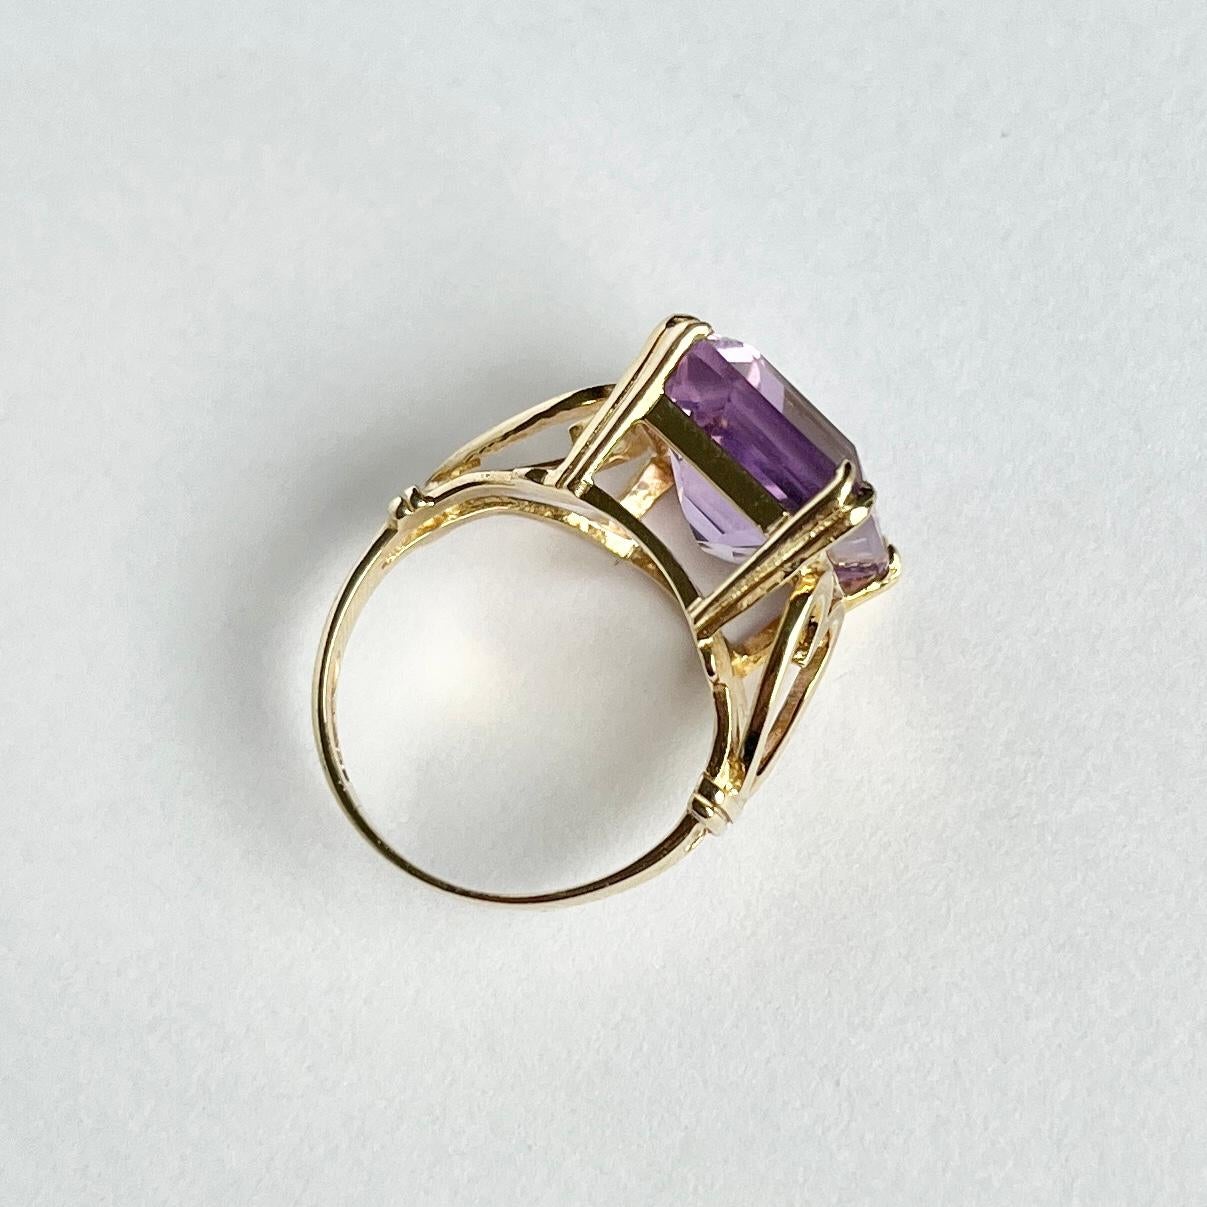 Der Amethyst auf diesem Ring ist ein wunderschöner violetter Stein, der in einfachen Klauen mit Herzschultern gehalten wird. Das Modell ist aus 9-karätigem Gold und hat eine offene Arbeitsgalerie. Gepunzt: Birmingham 1978.

Ringgröße: G 1/2 oder 3